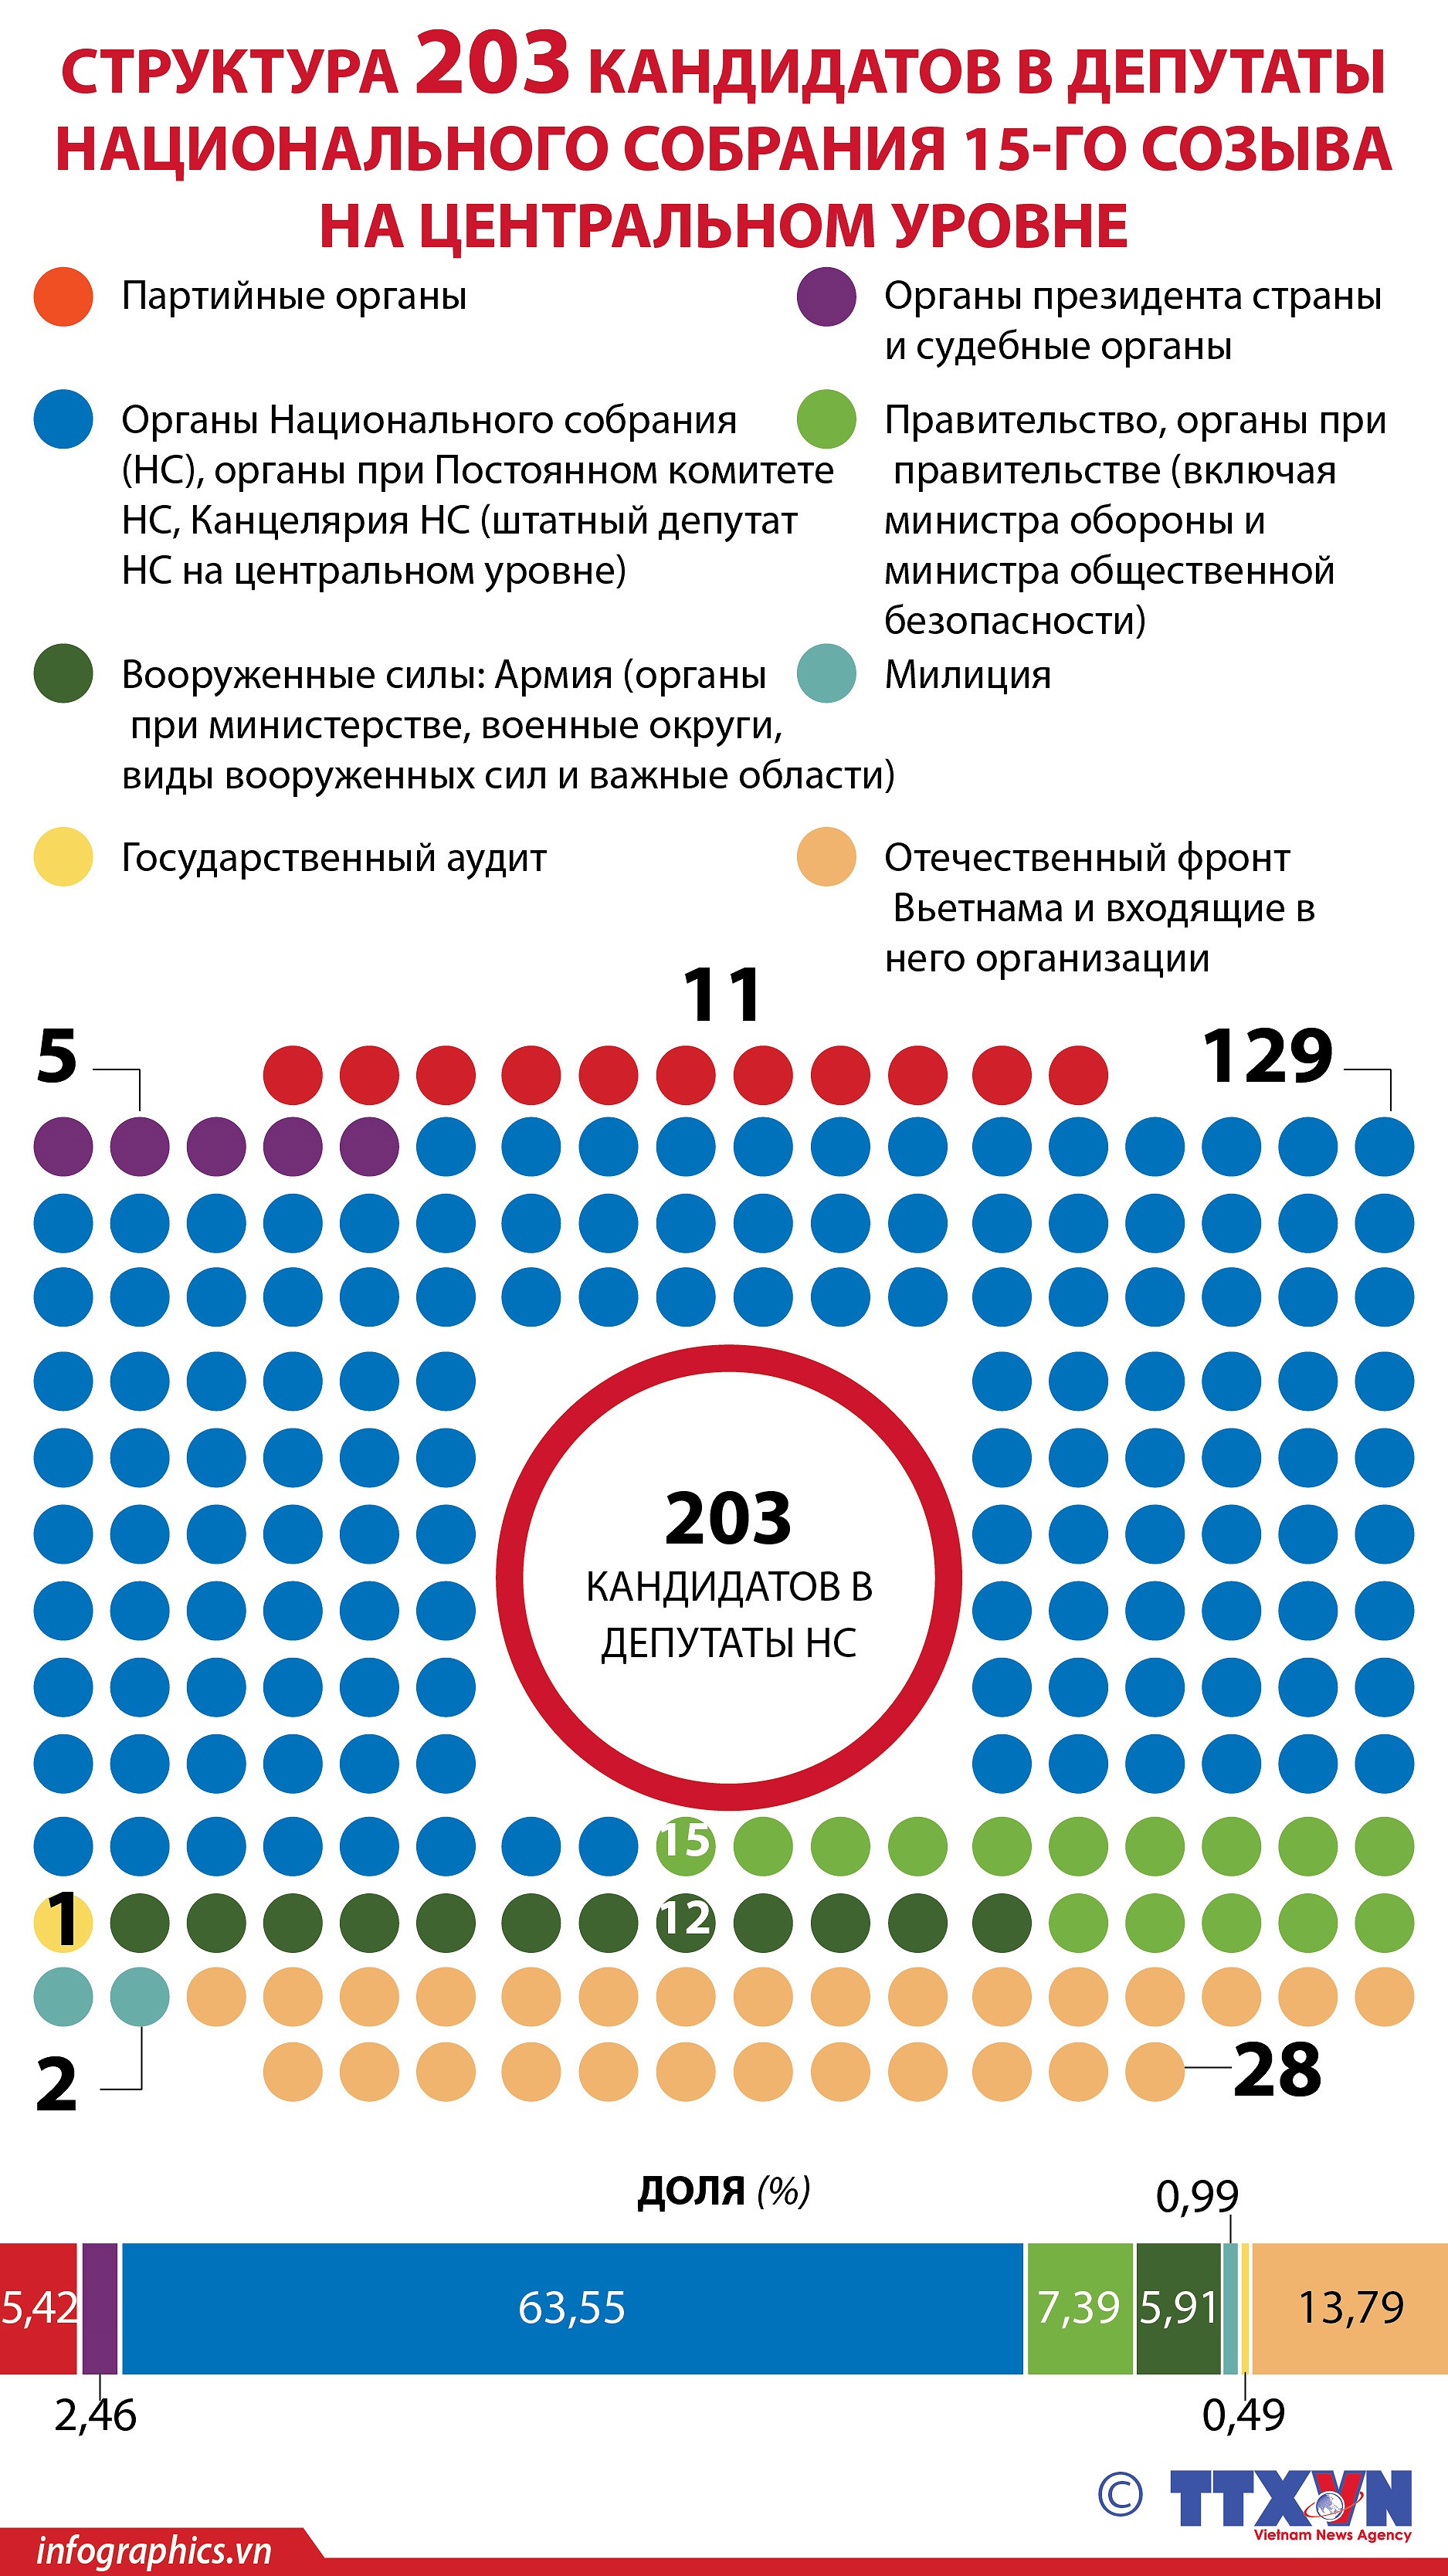 Структура 203 кандидатов в депутаты Национального собрания 15-го созыва на центральном уровне hinh anh 1